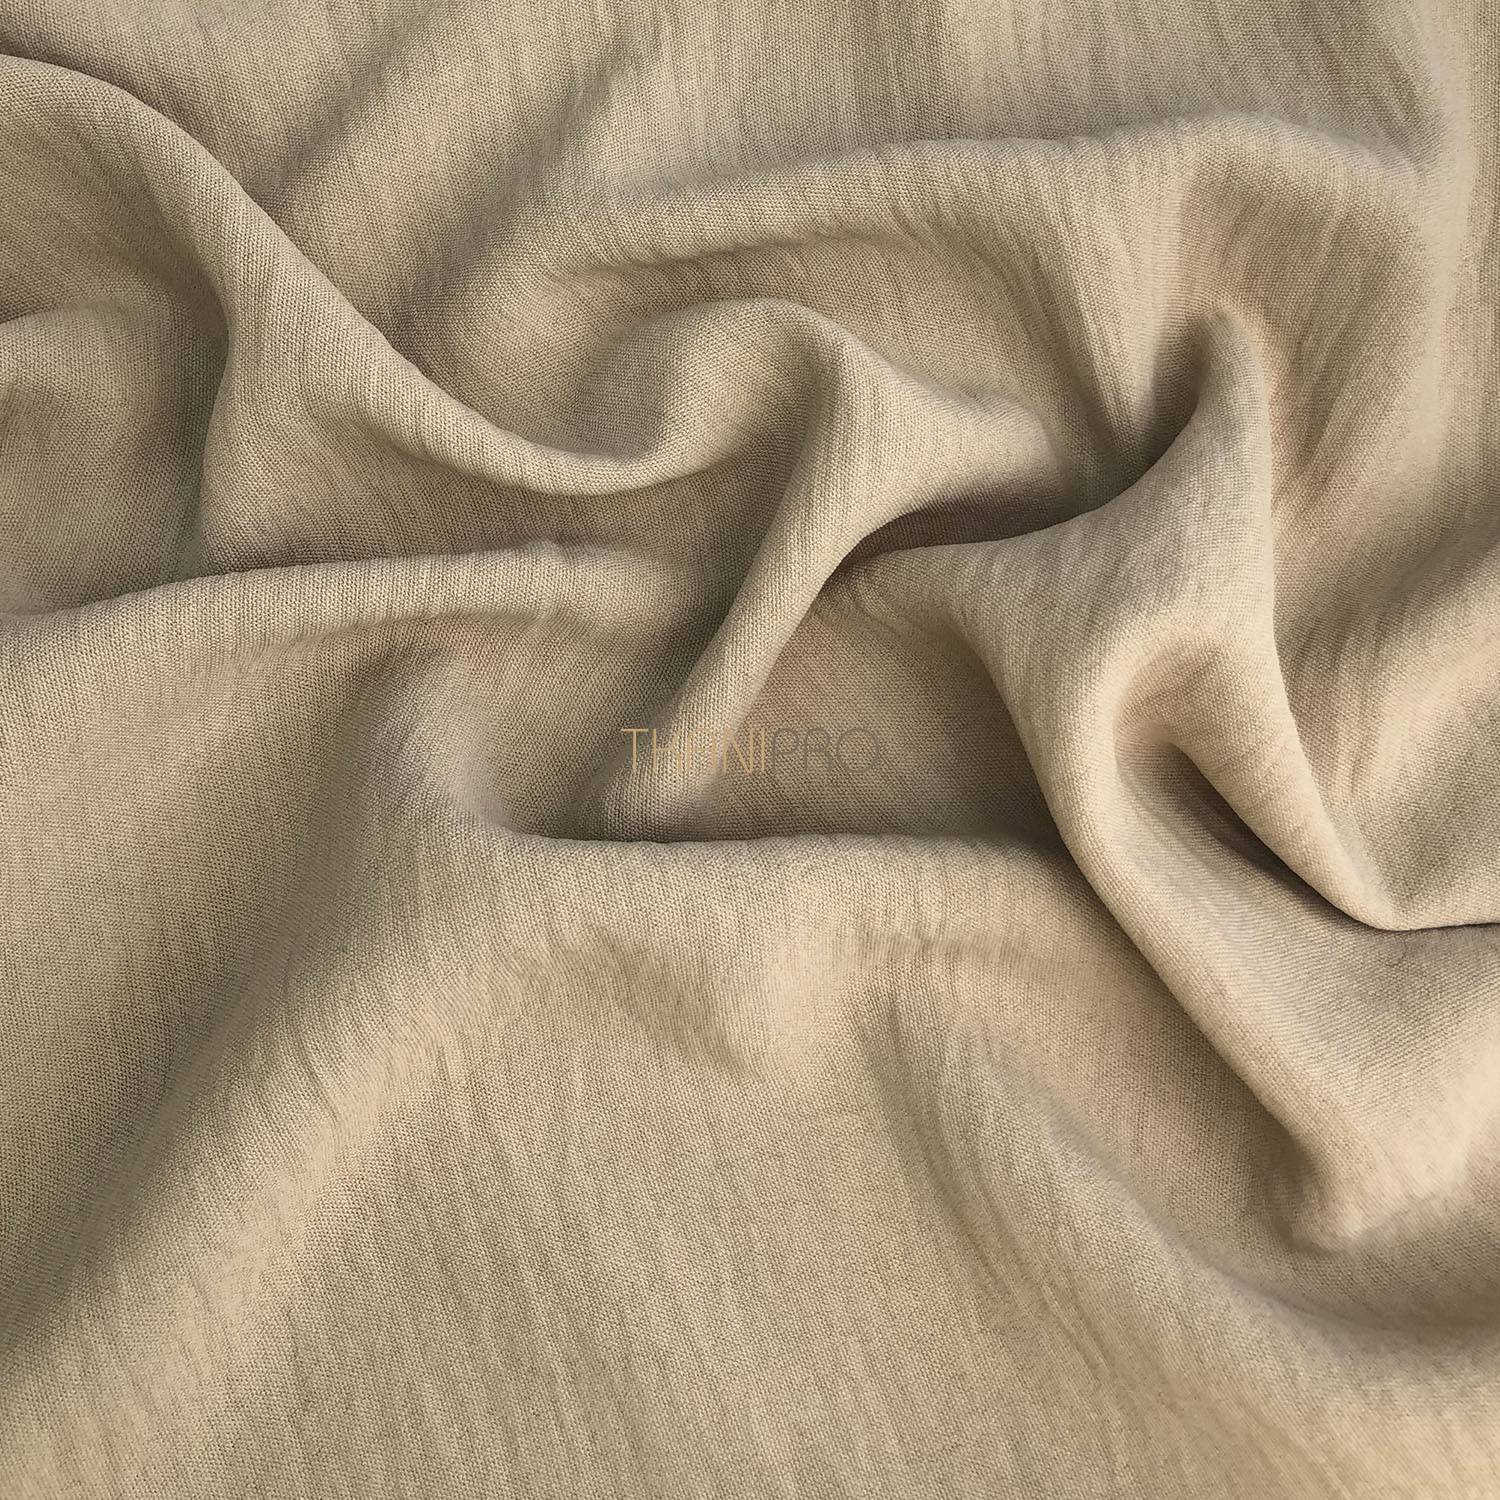 Ткань жатка — описание, состав, применение и правильный уход